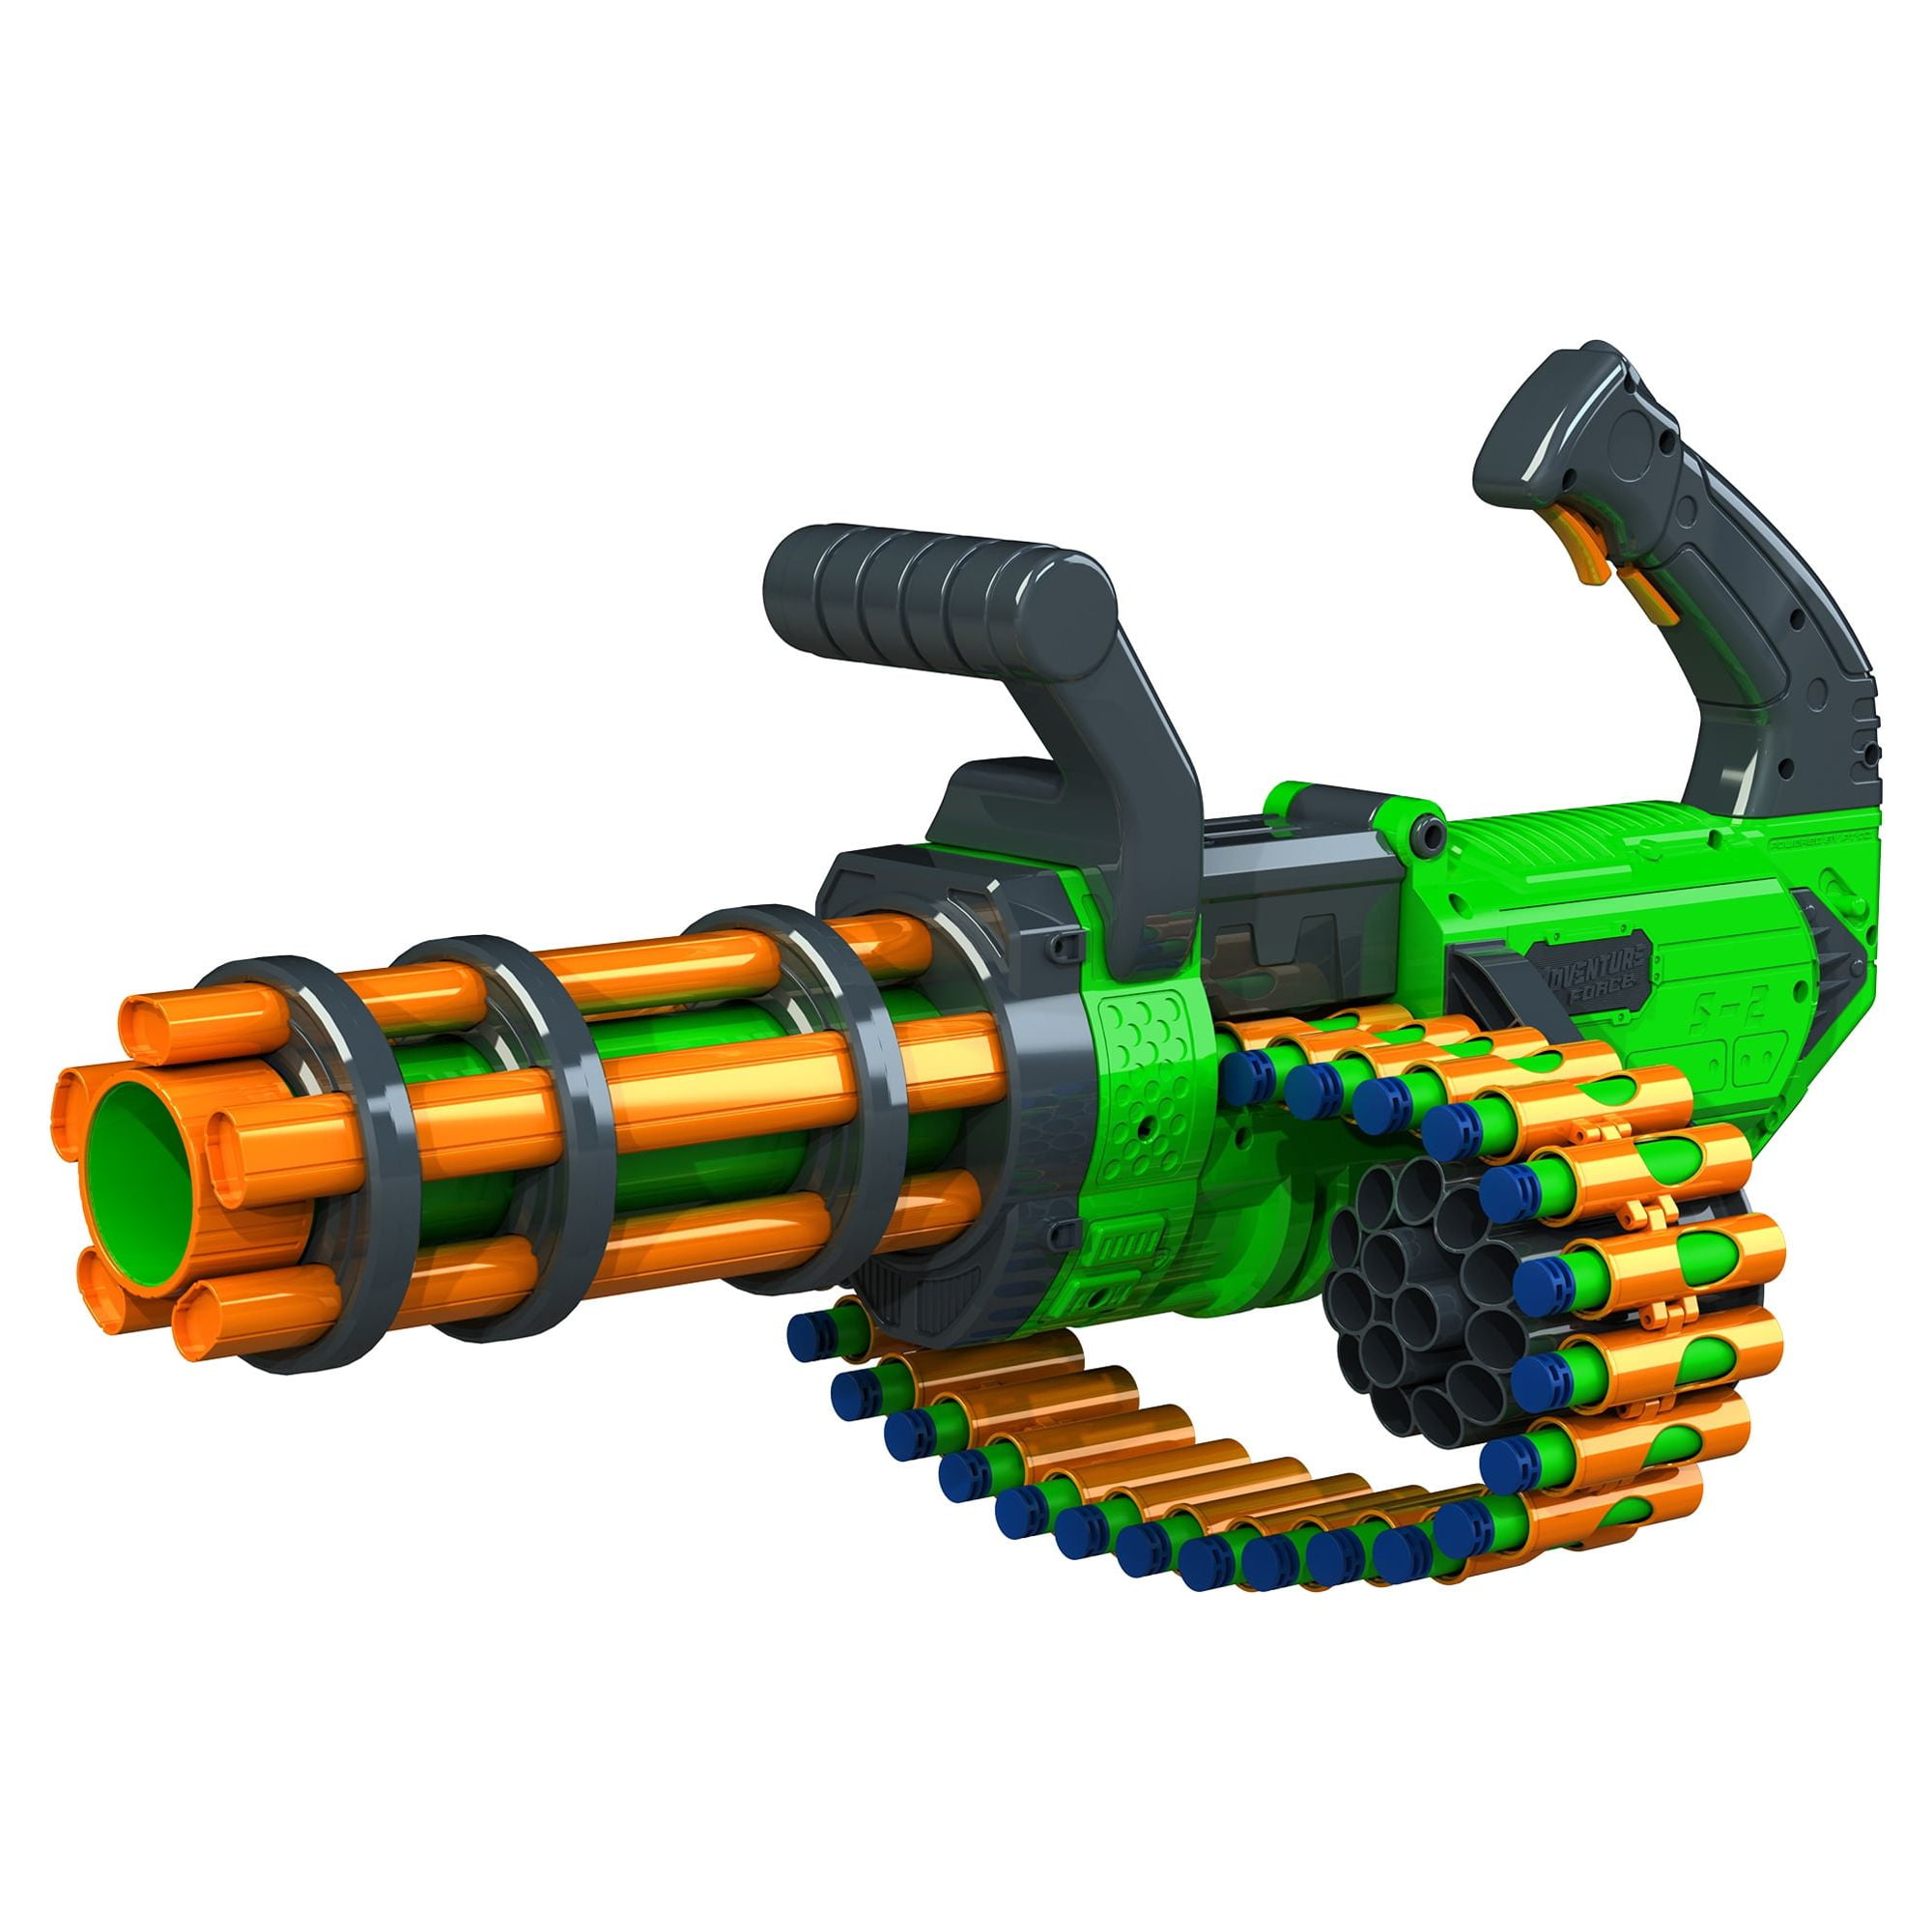 Pistolet blaster motorisé compatible Uniquement avec fléchettes